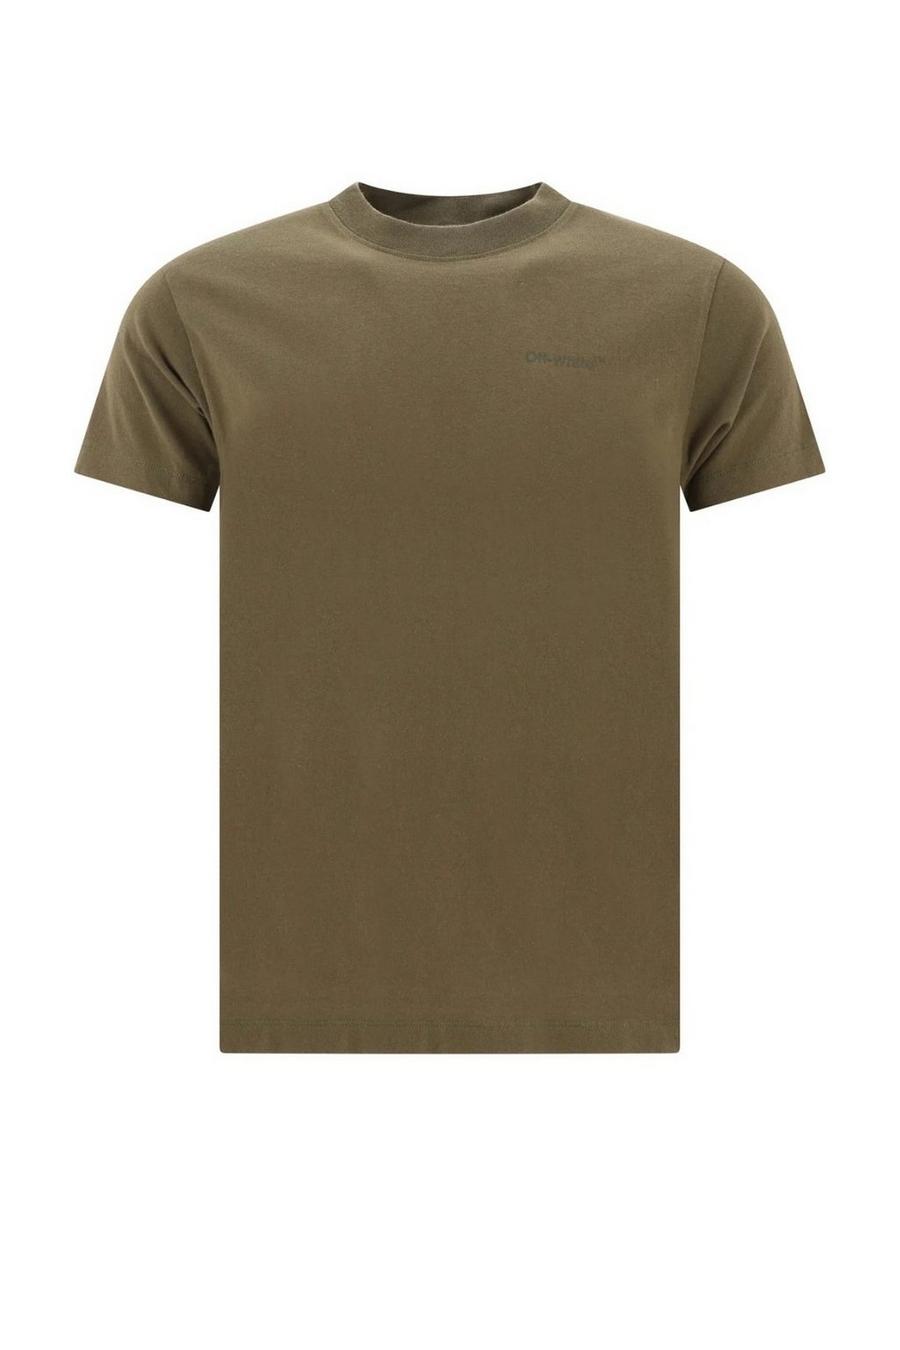 Diag Tab Slim Fit Army Green T-Shirt